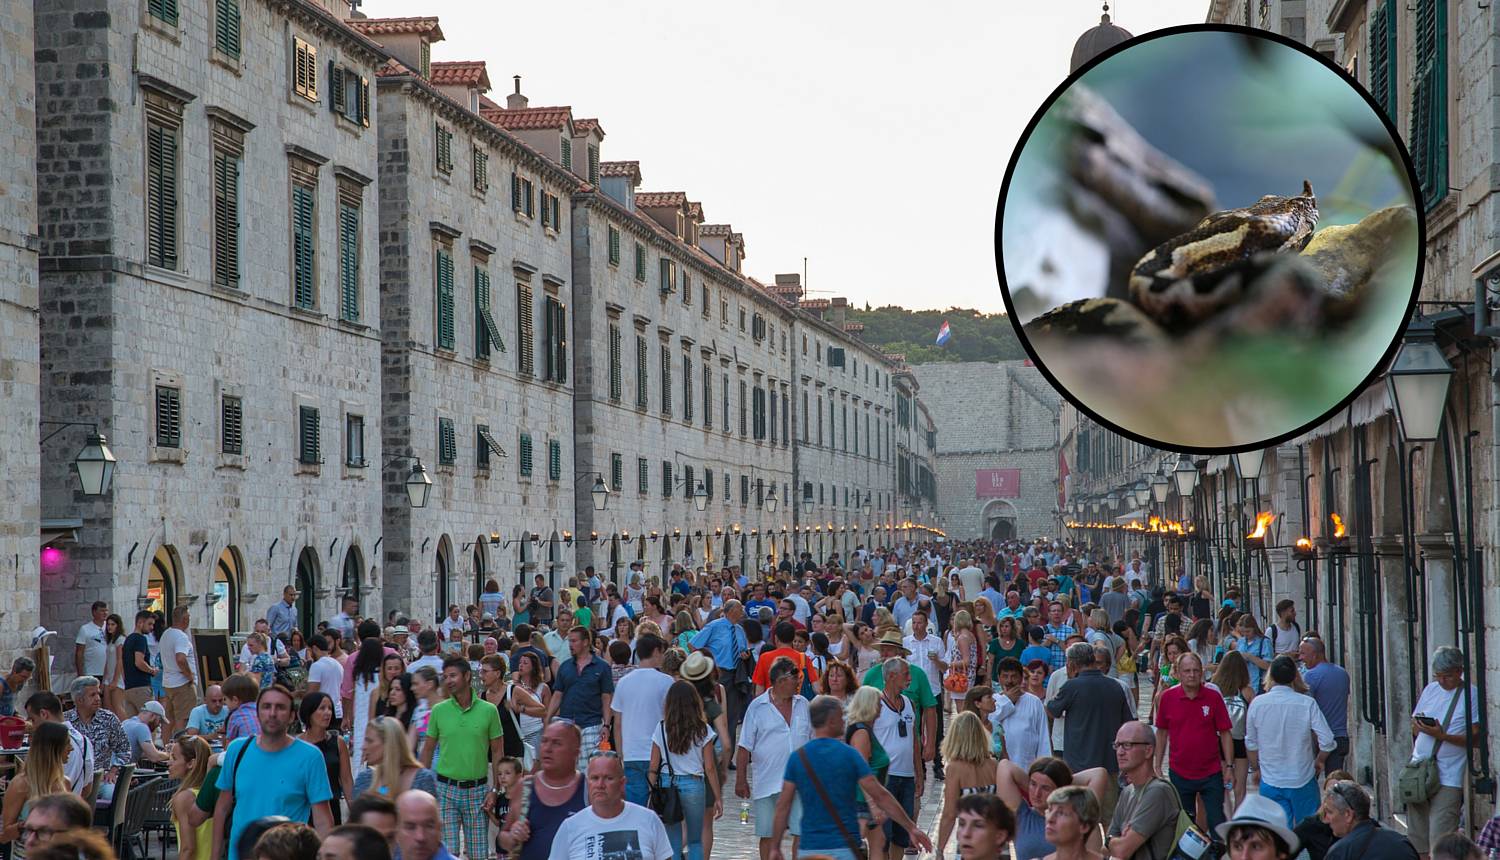 Velika opasnost: Leglo poskoka u samom centru Dubrovnika